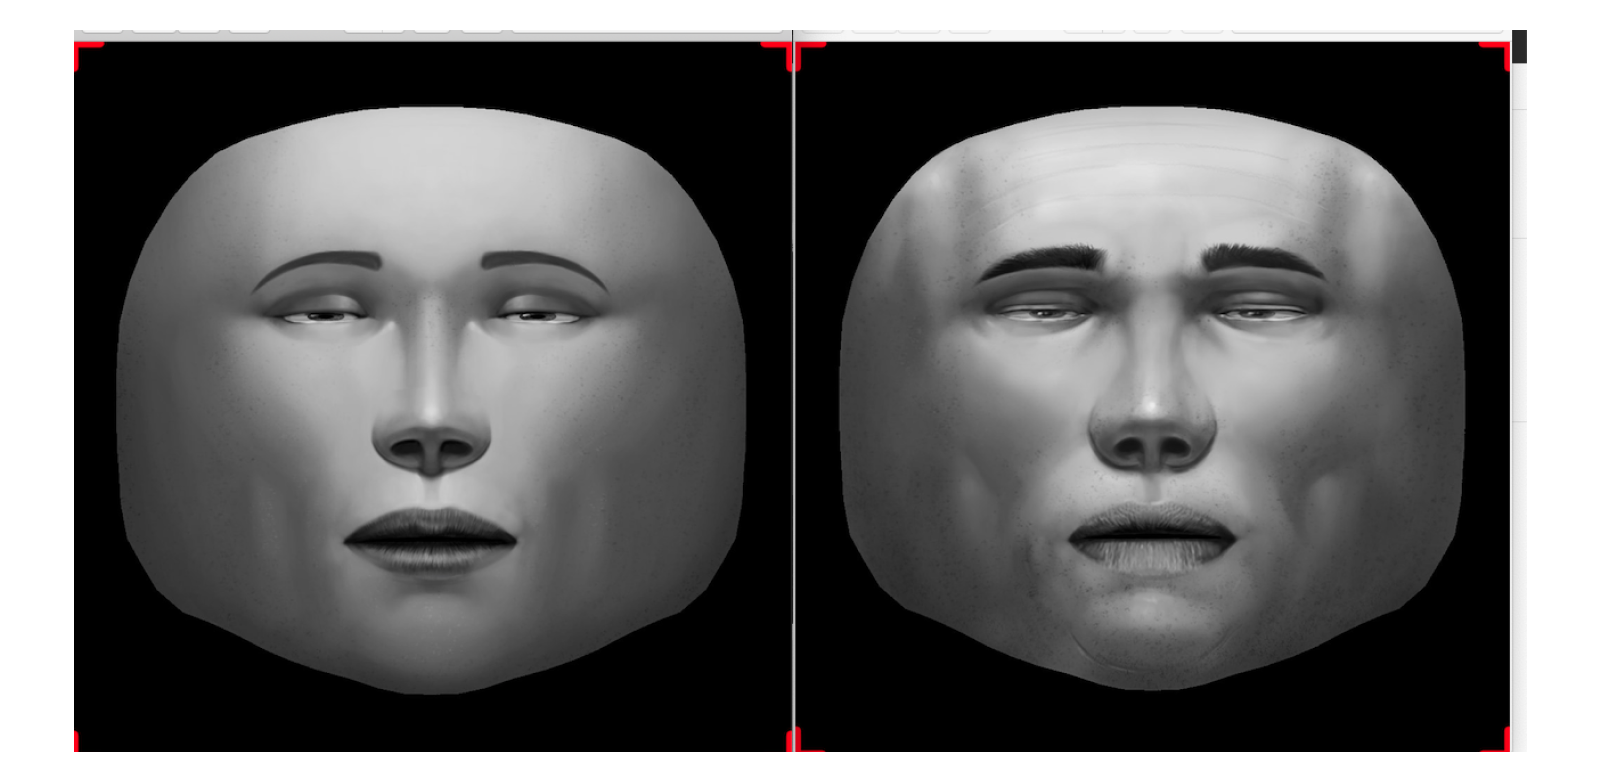 Скачай приложение где маски. Маска для Spark ar. Макет маски для лица. Лицо для создавания масок. Лицо для маски Spark ar.